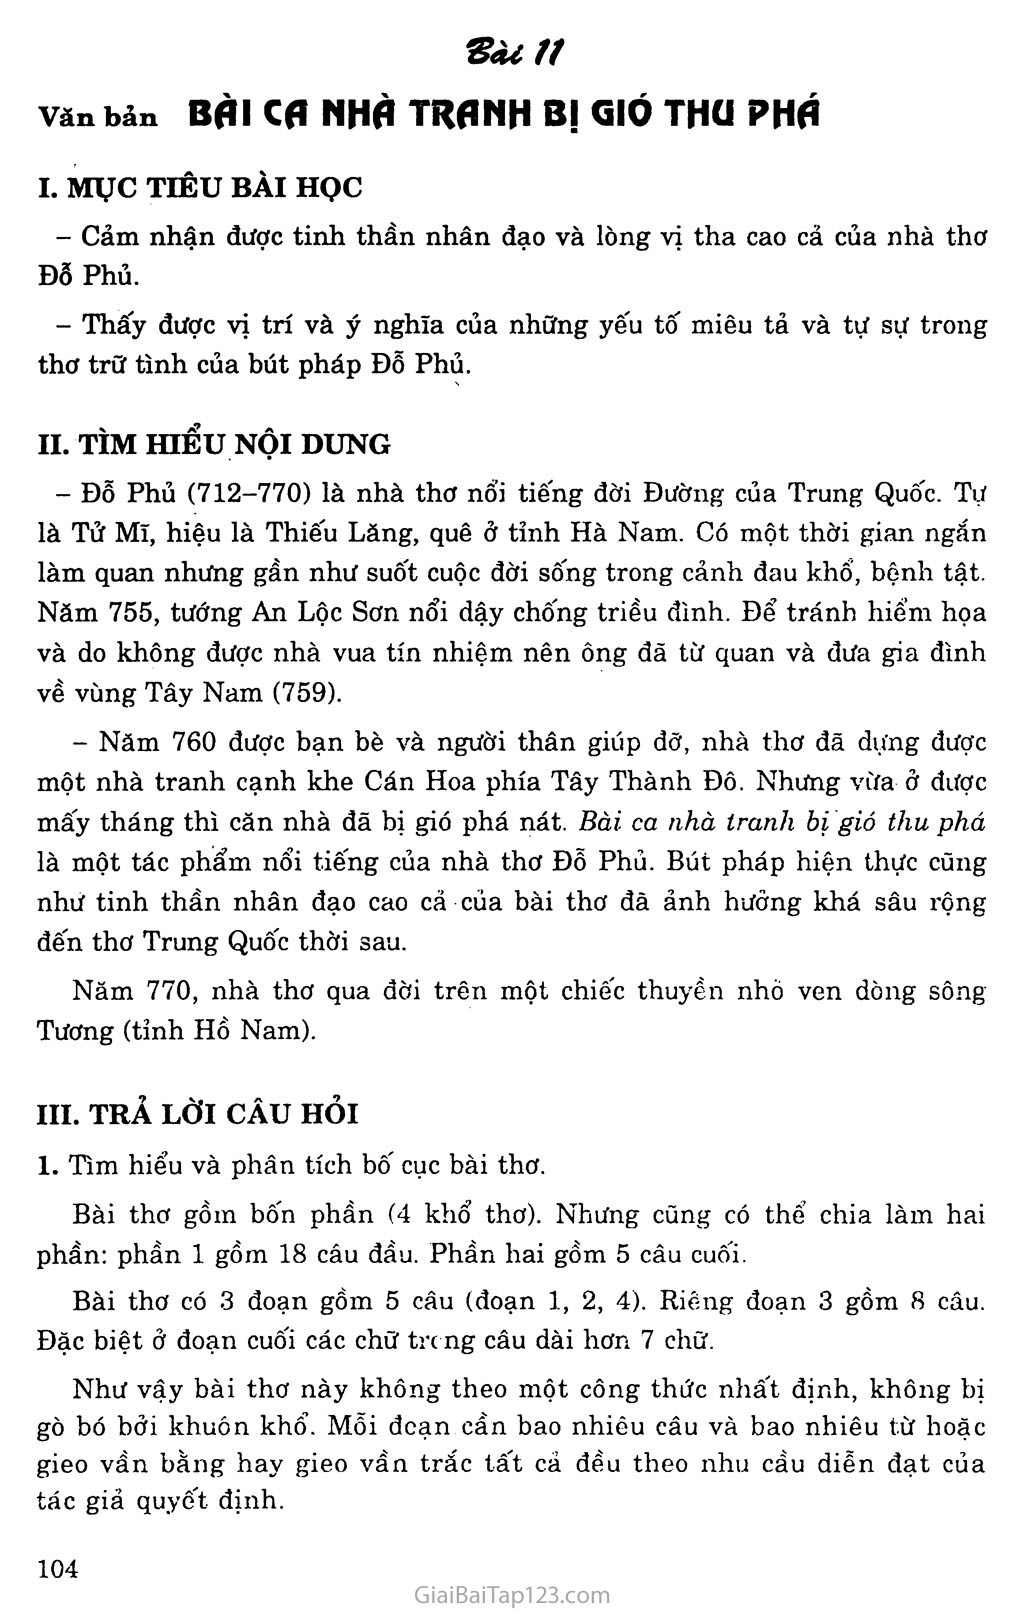 Bài ca nhà tranh bị gió thu phá (Mao ốc vị thu phong sở phá ca) trang 1